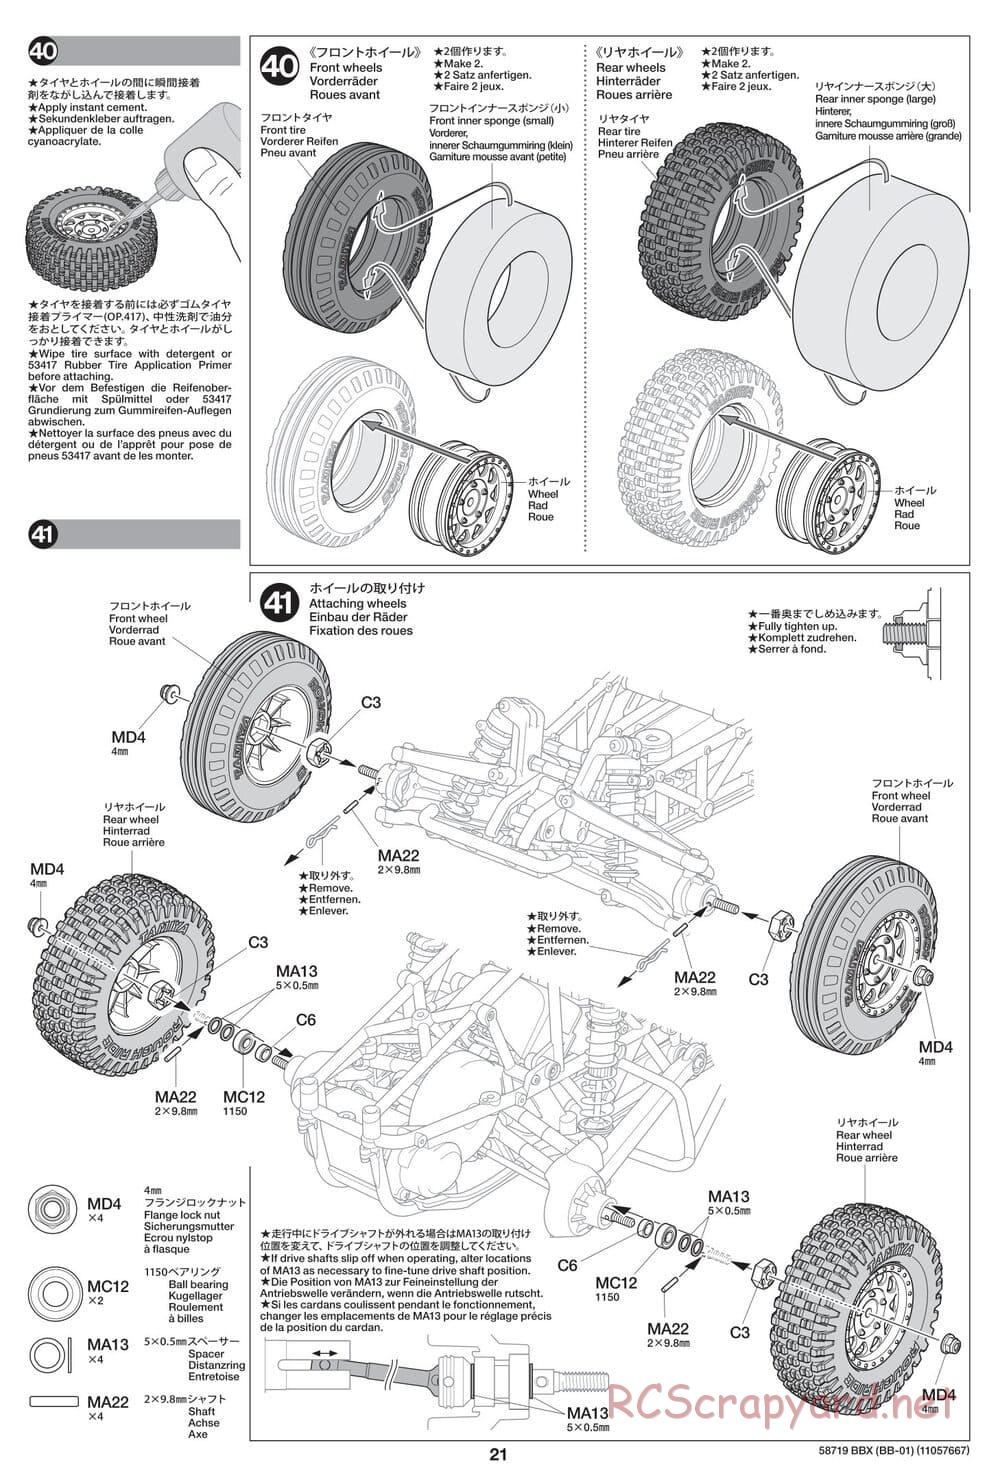 Tamiya - BBX - BB-01 Chassis - Manual - Page 21